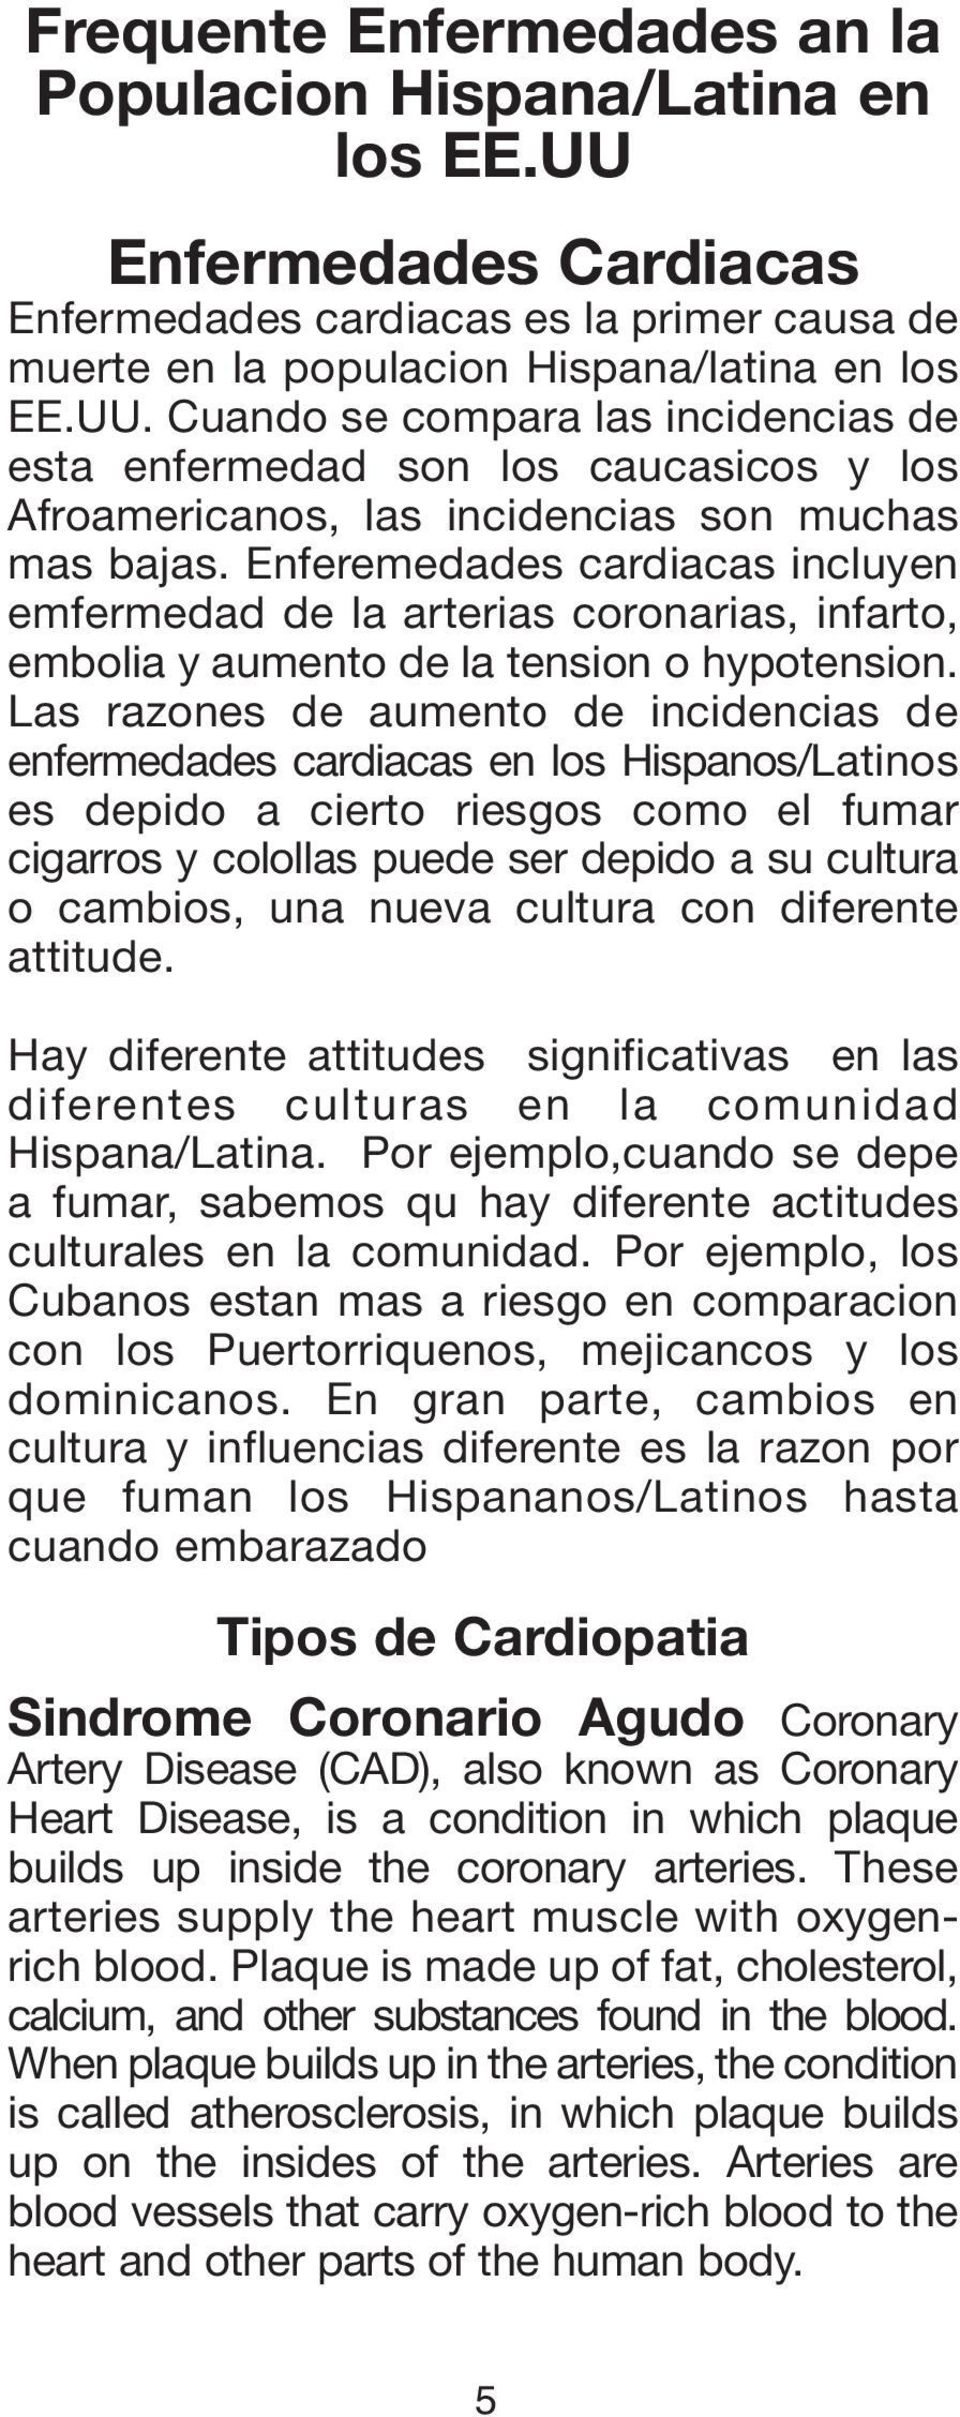 Las razones de aumento de incidencias de enfermedades cardiacas en los Hispanos/Latinos es depido a cierto riesgos como el fumar cigarros y colollas puede ser depido a su cultura o cambios, una nueva